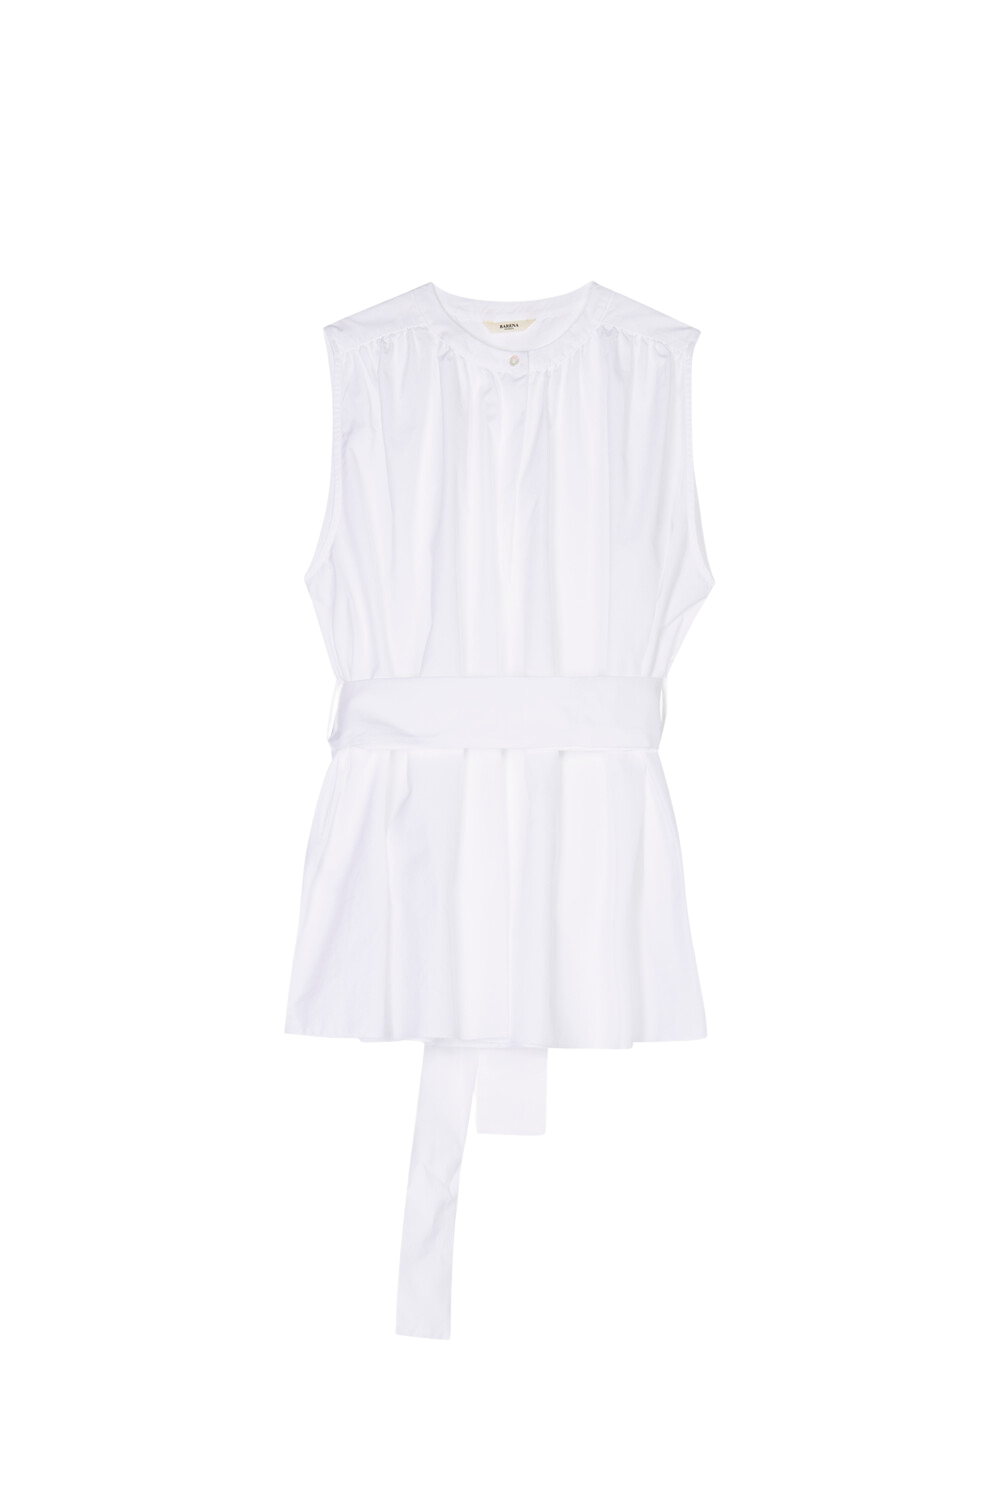 Moretta Bagio Shirt - Bianco